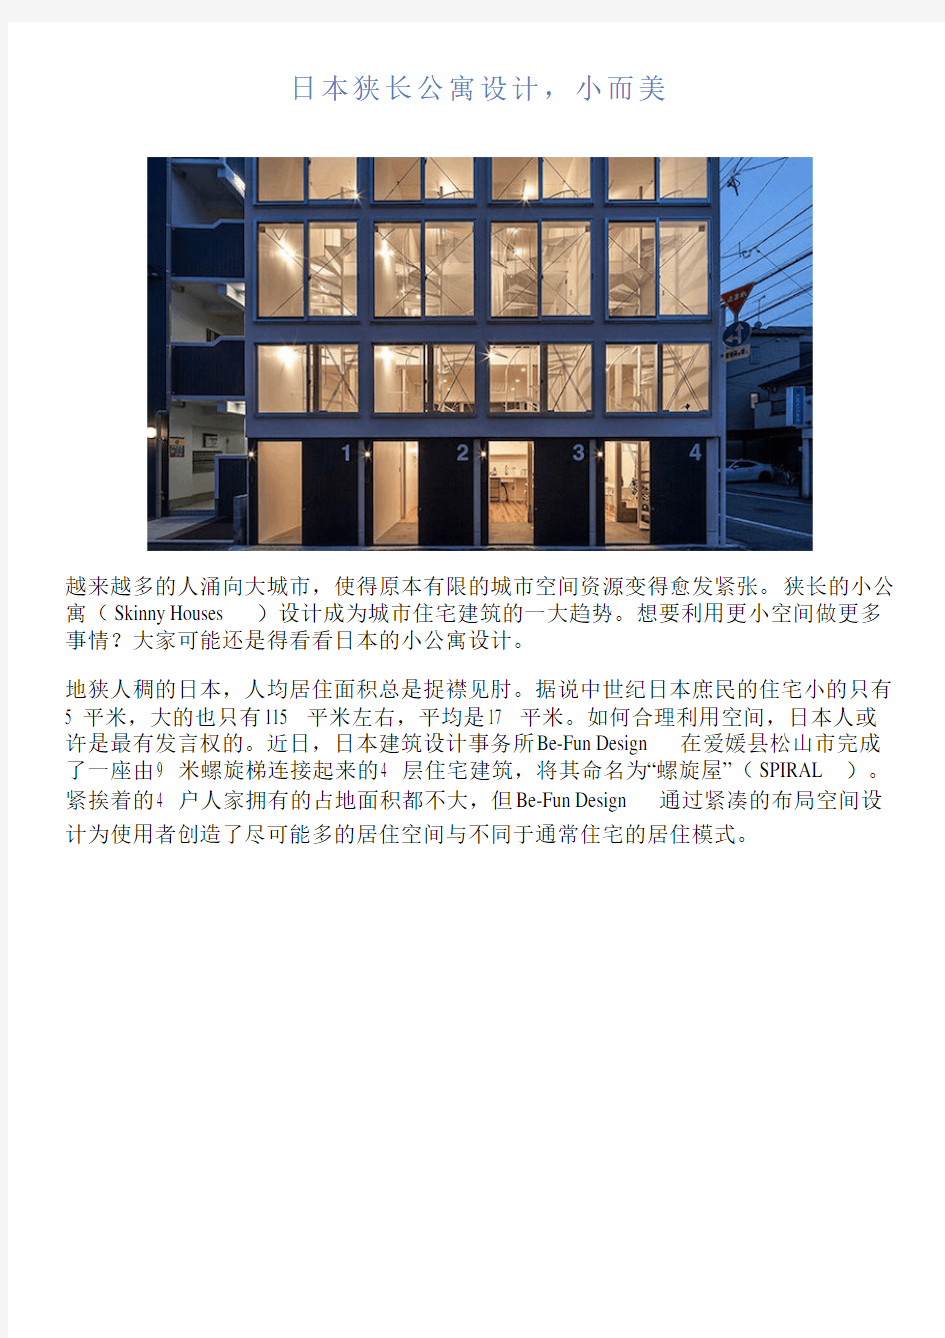 日本狭长公寓设计,小而美